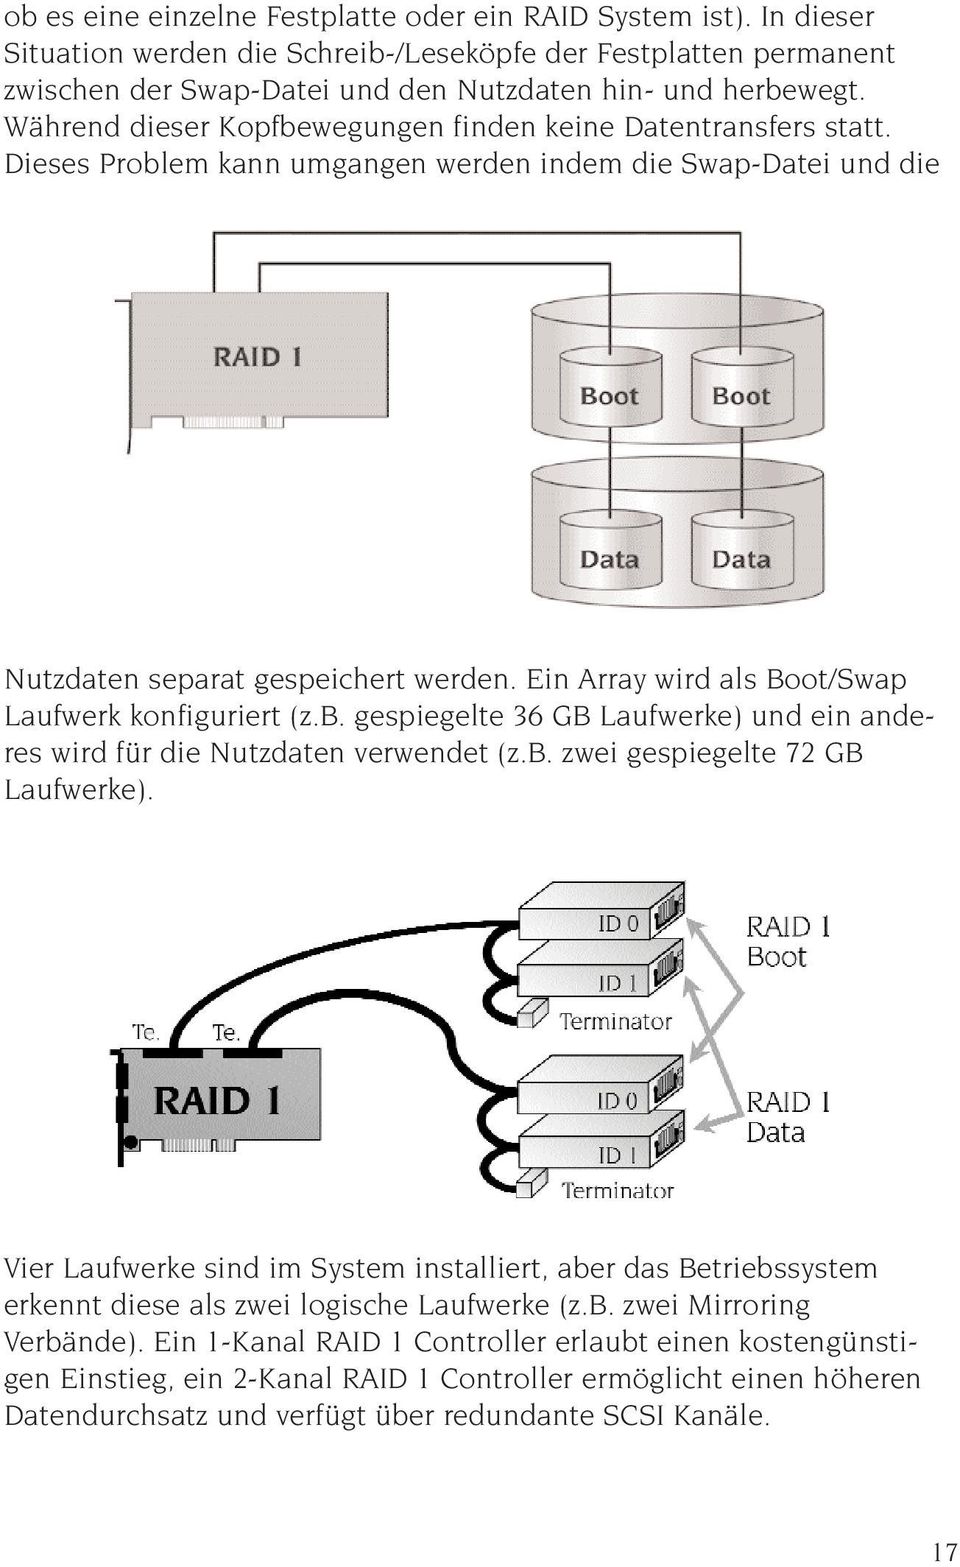 Ein Array wird als Boot/Swap Laufwerk konfiguriert (z.b. gespiegelte 36 GB Laufwerke) und ein anderes wird für die Nutzdaten verwendet (z.b. zwei gespiegelte 72 GB Laufwerke).